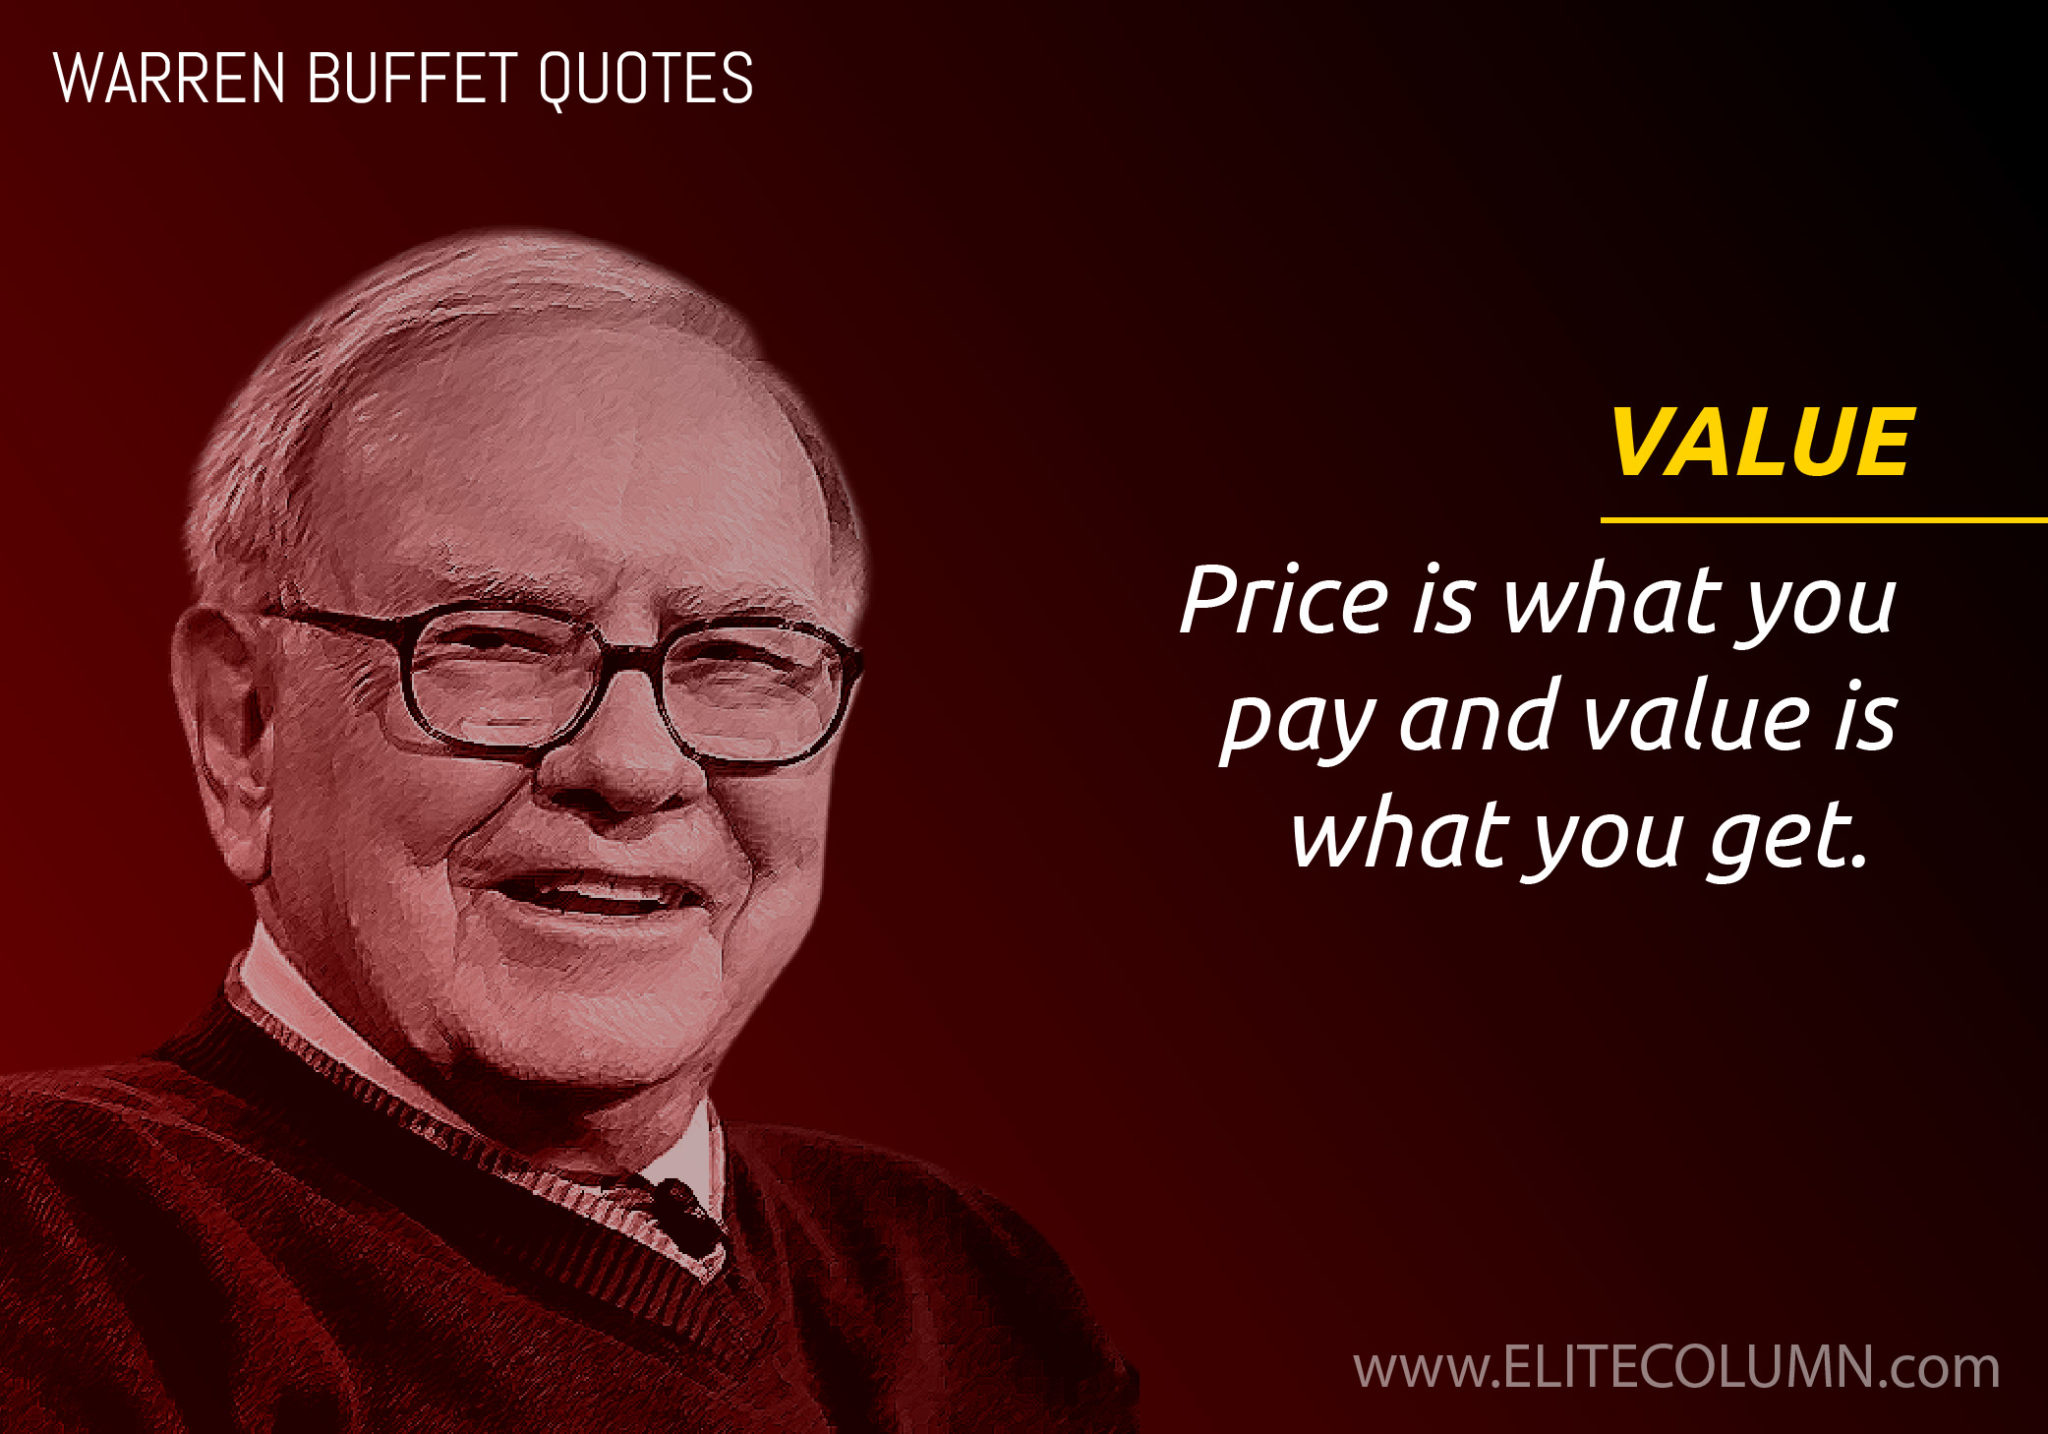 Warren Buffett On Value